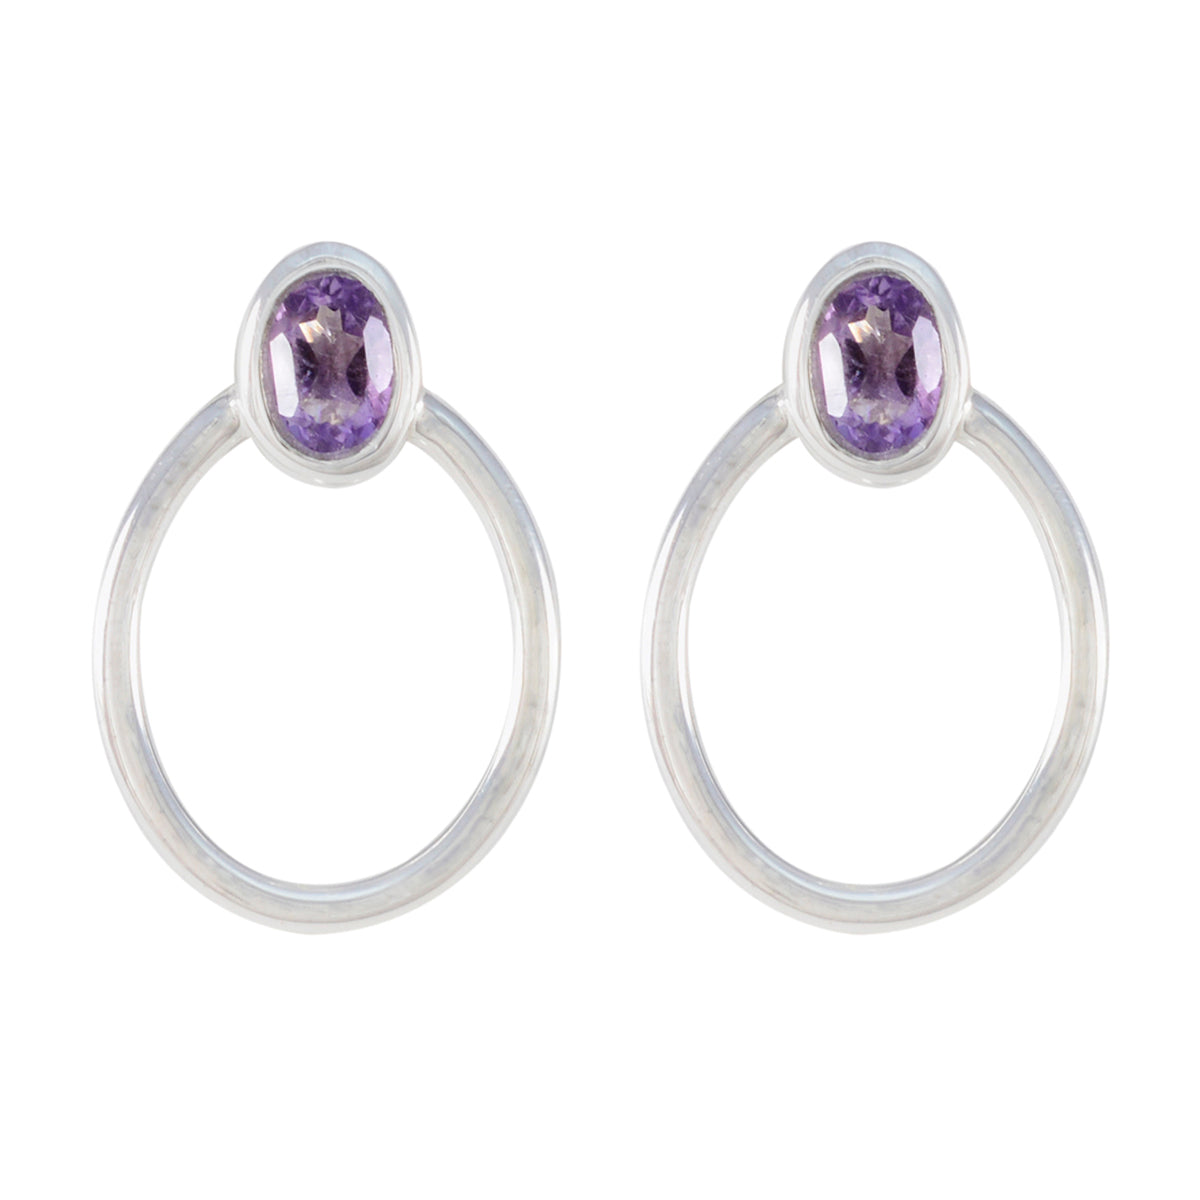 Riyo Smashing Sterling Silver Earring For Lady Amethyst Earring Bezel Setting Purple Earring Stud Earring